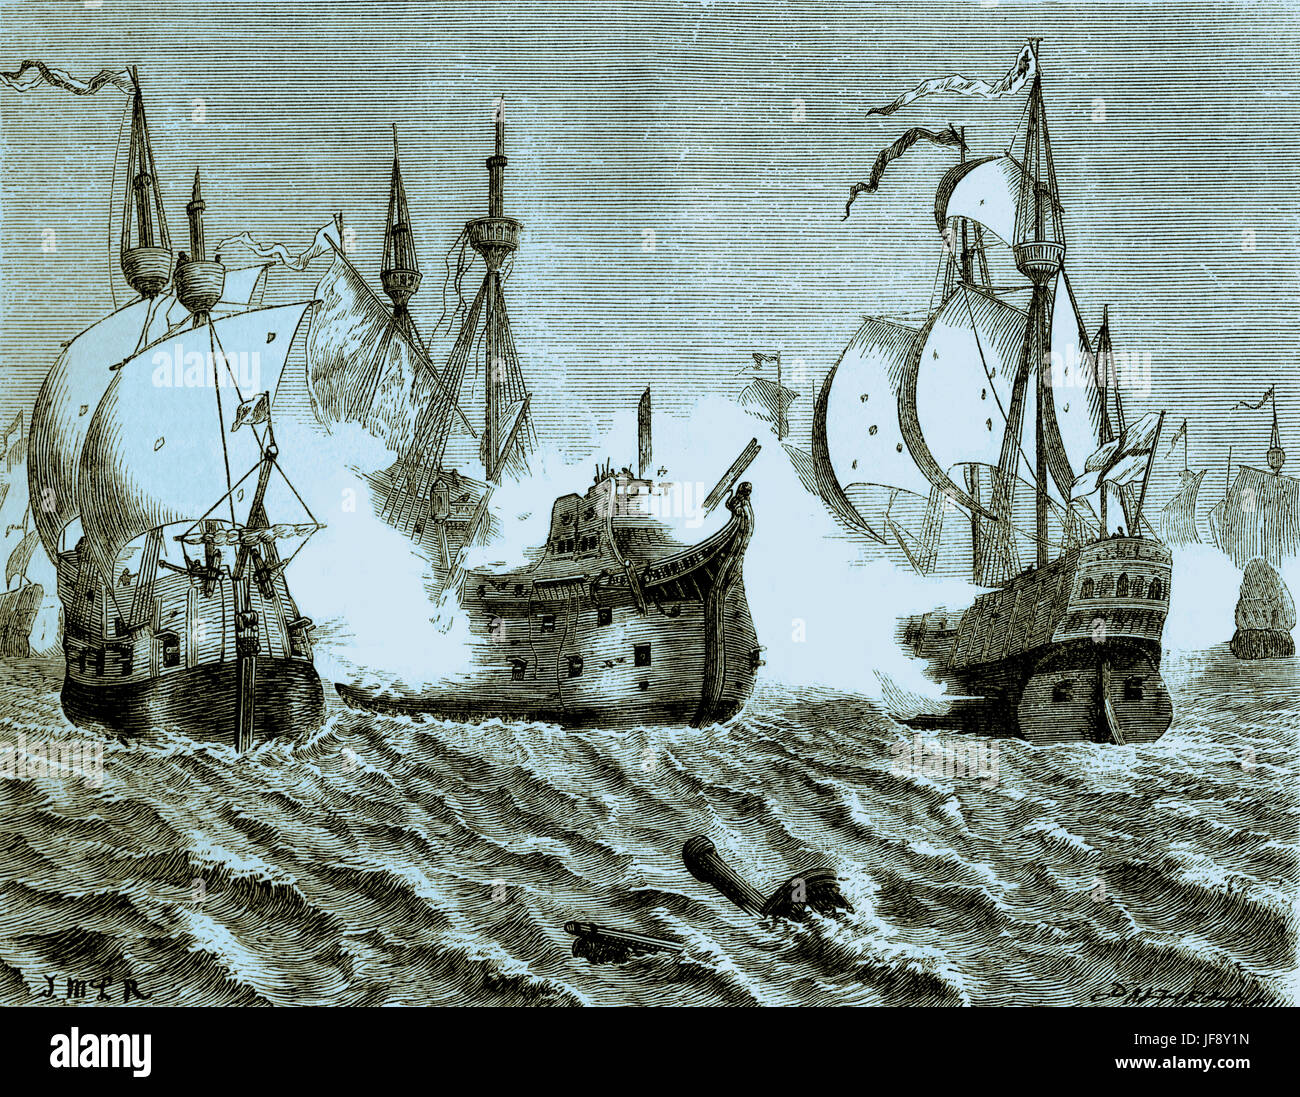 Bataille navale entre l'Armada espagnole et la flotte d'Elizabeth I, guerre anglo-espagnole. Illustration par ex. Dalziel (1817 - 1905) Banque D'Images